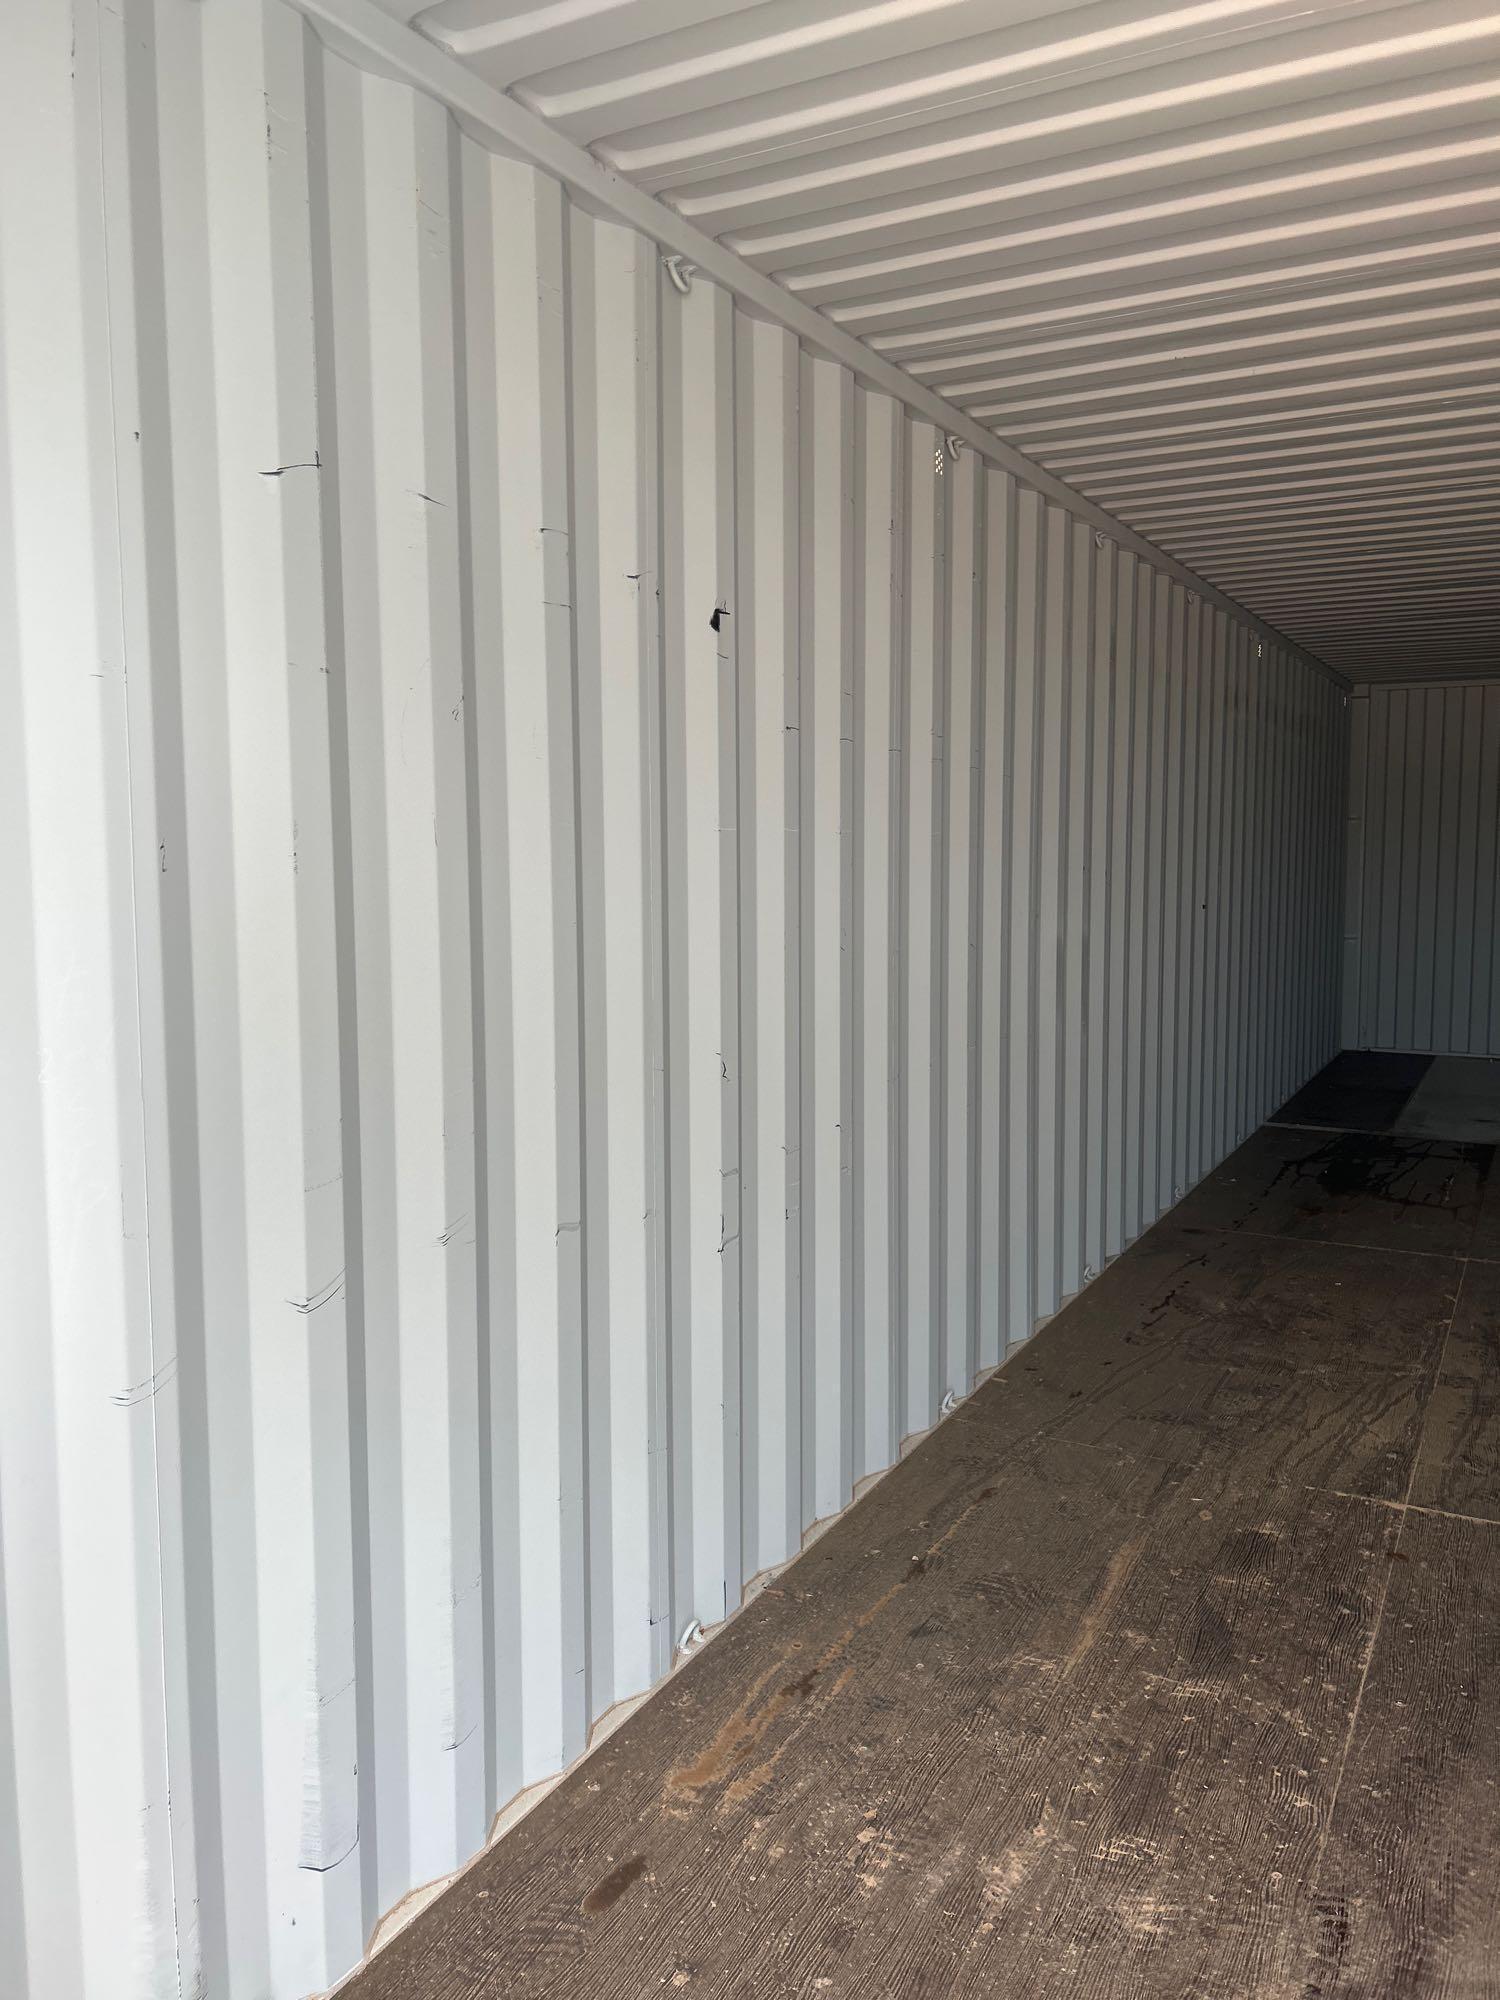 40FT Hi Cube Sea/Storage Container